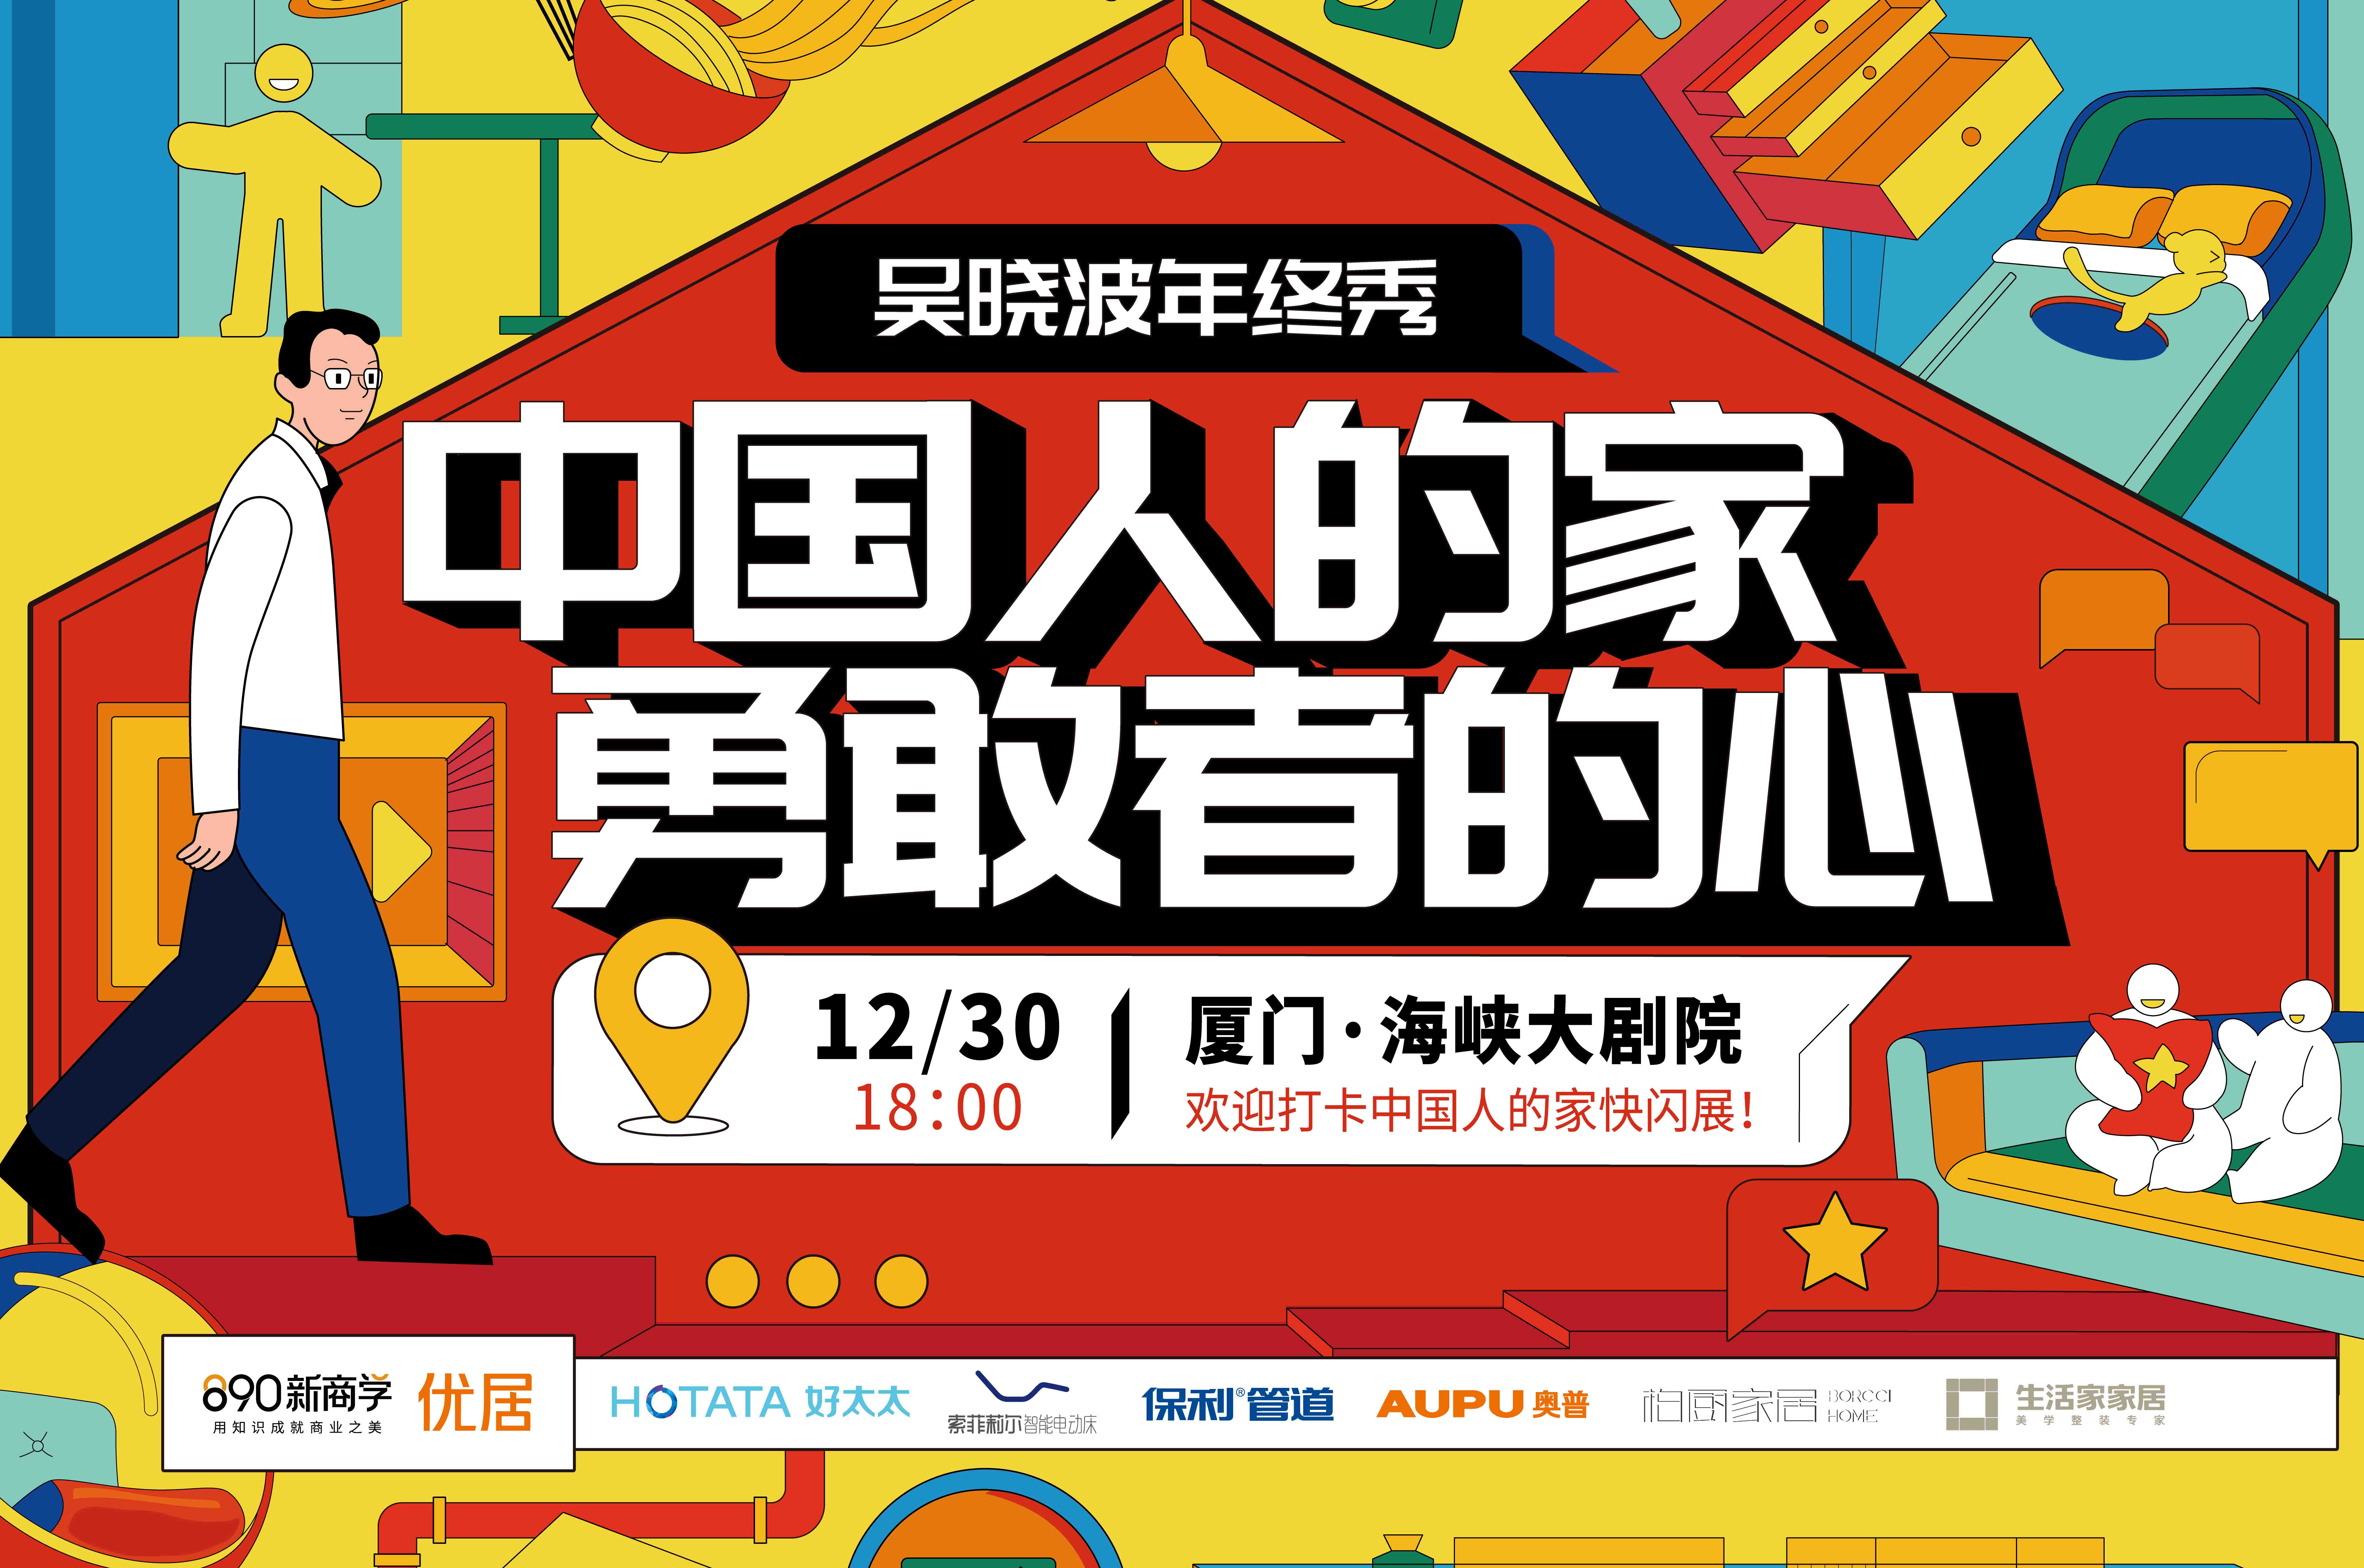 12月30日，「中国人的家」主题快闪将秀上吴晓波年终秀，携手优秀的家居品牌空降厦门。